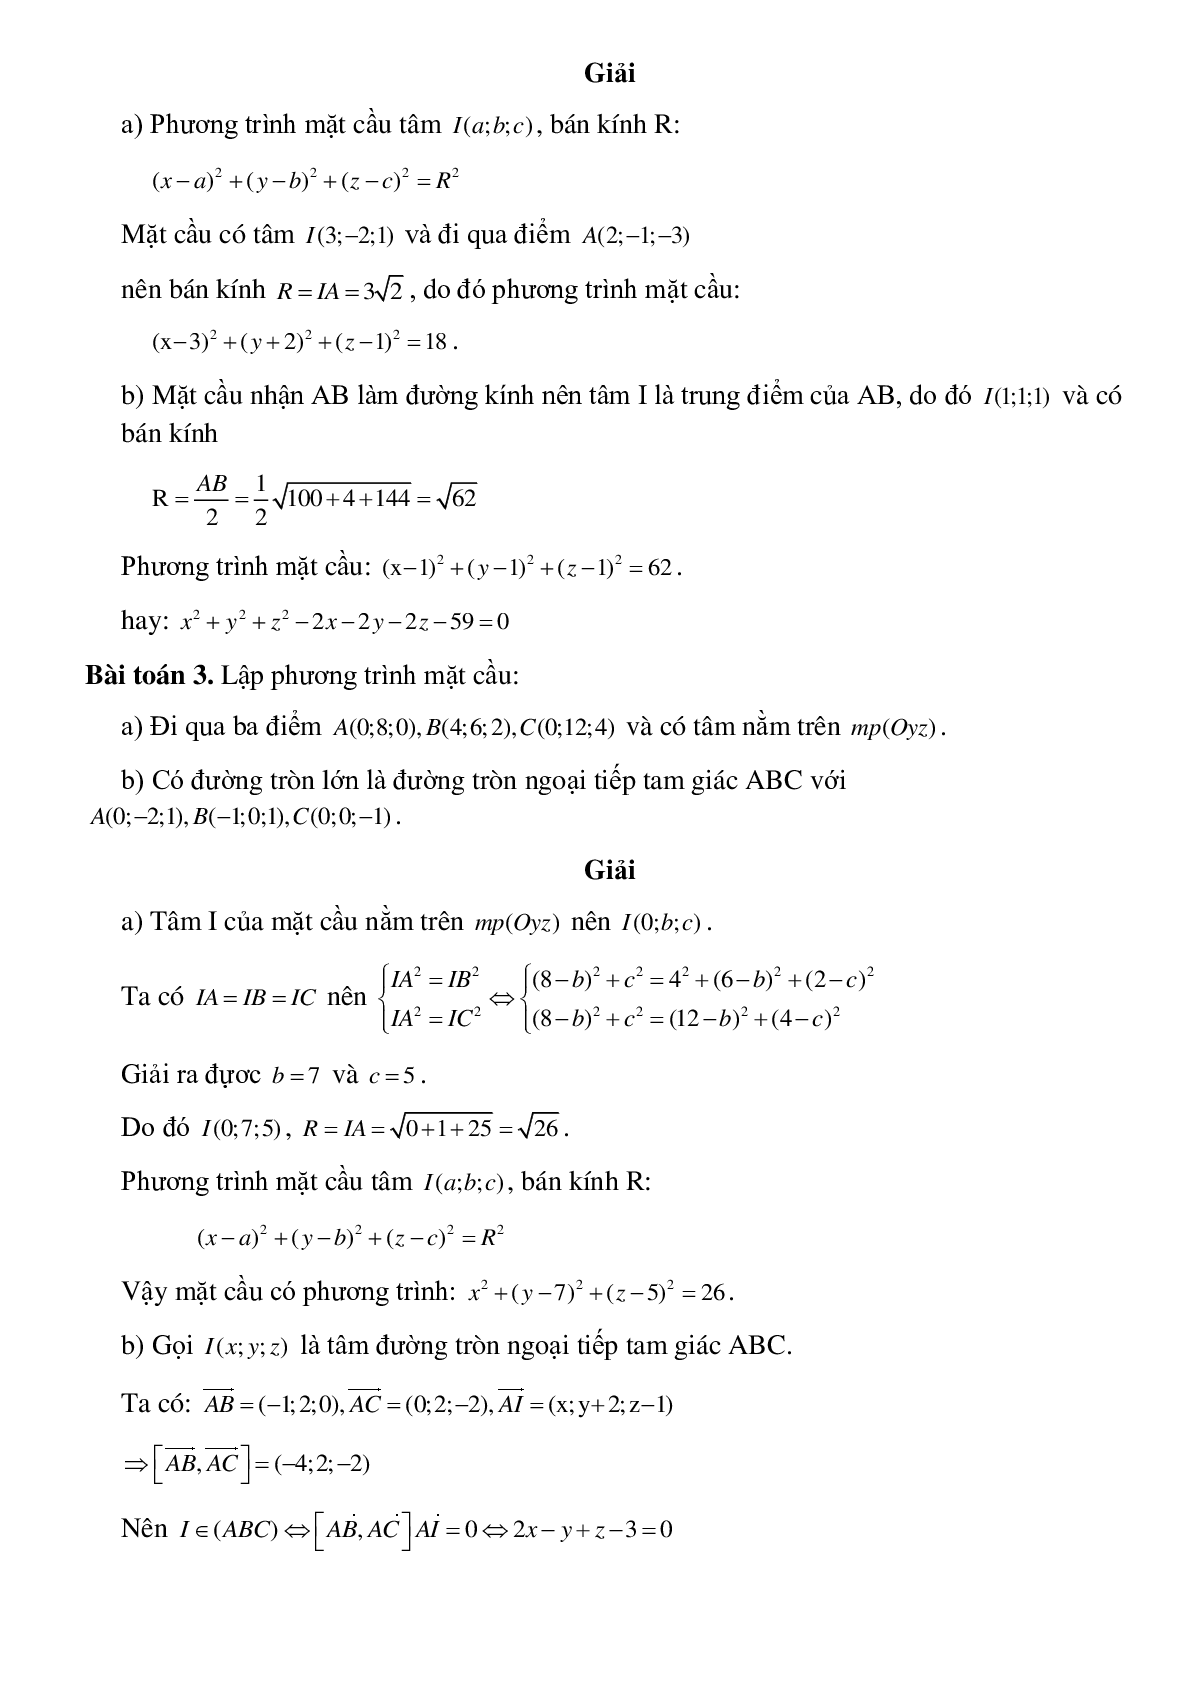 Lập phương trình mặt cầu (trang 2)